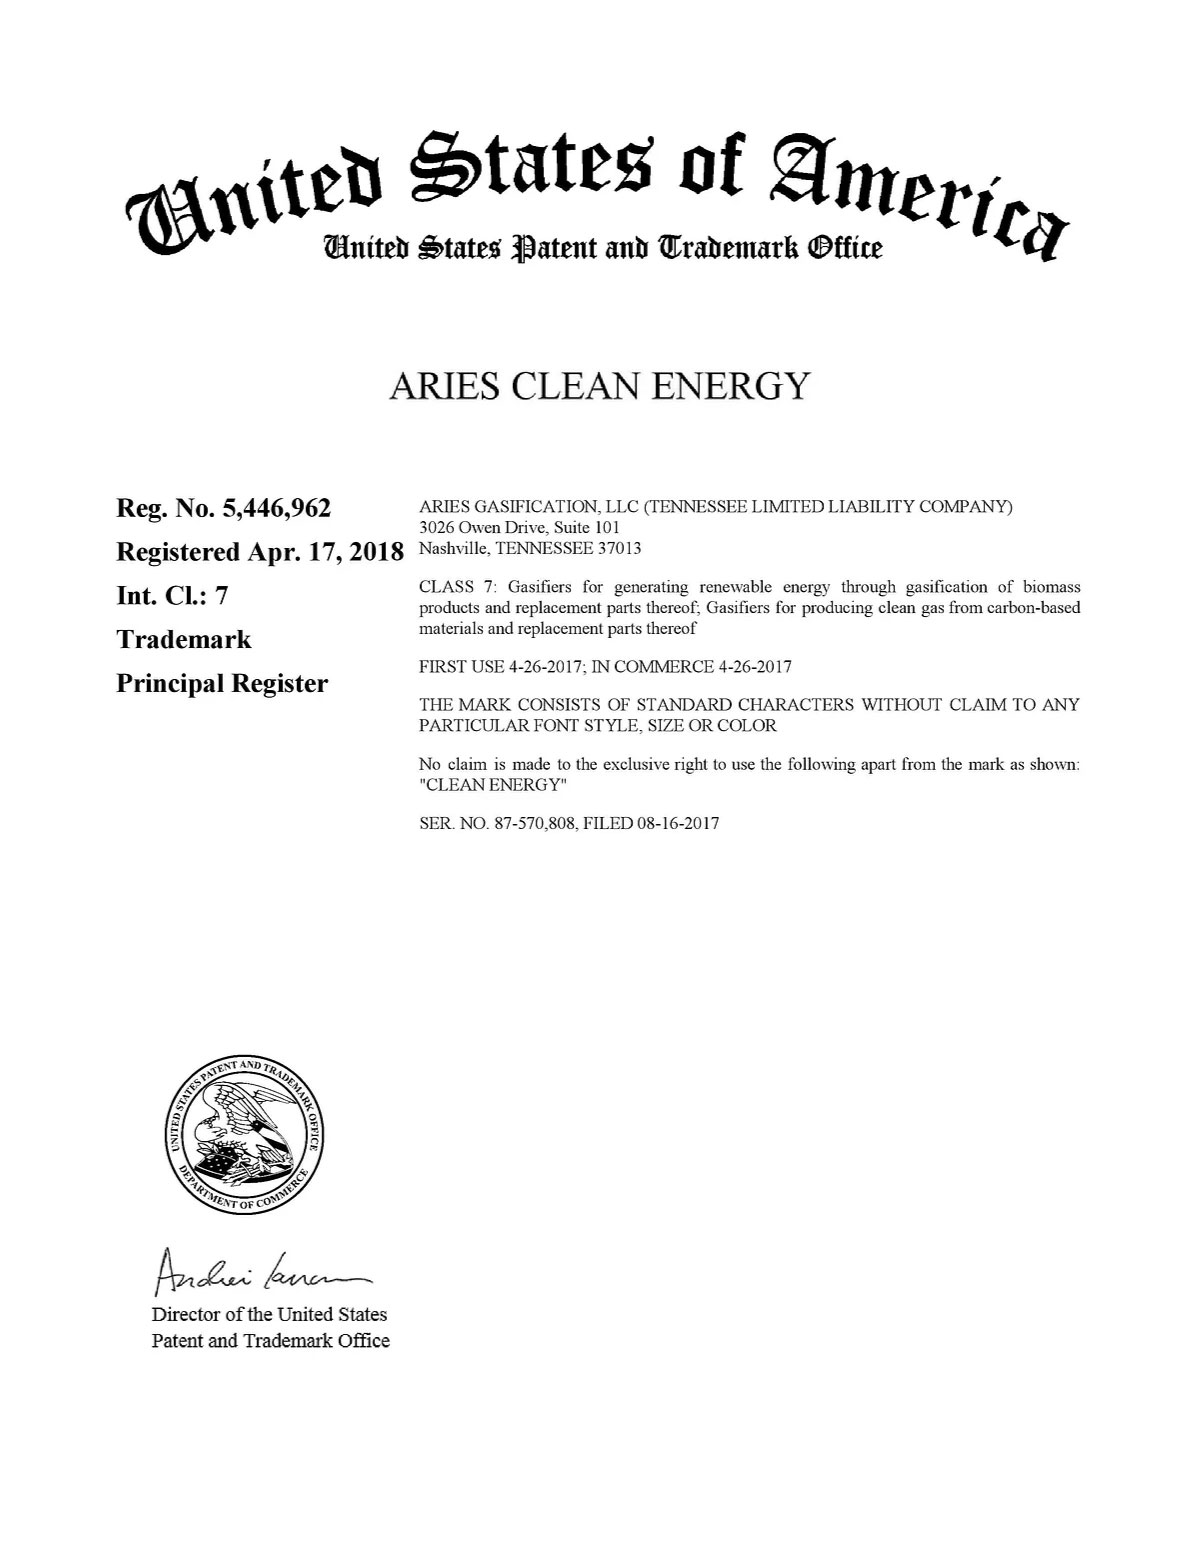 Aries Clean Energy Trademark